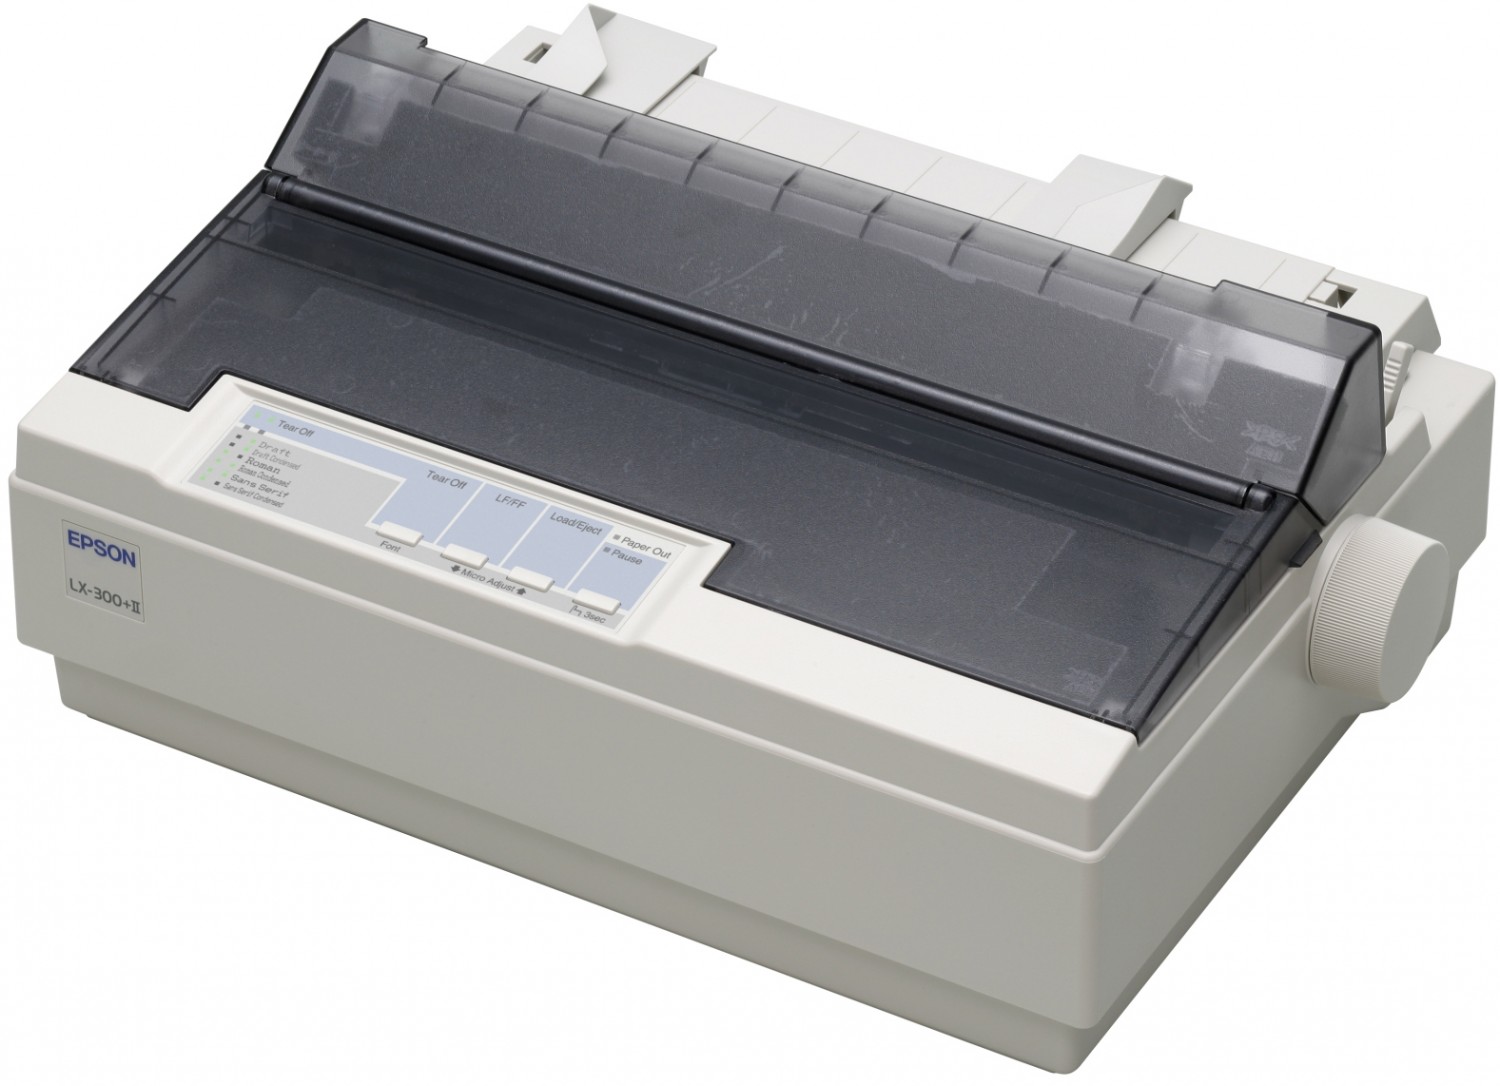 Printer Dot Matrix LX 300